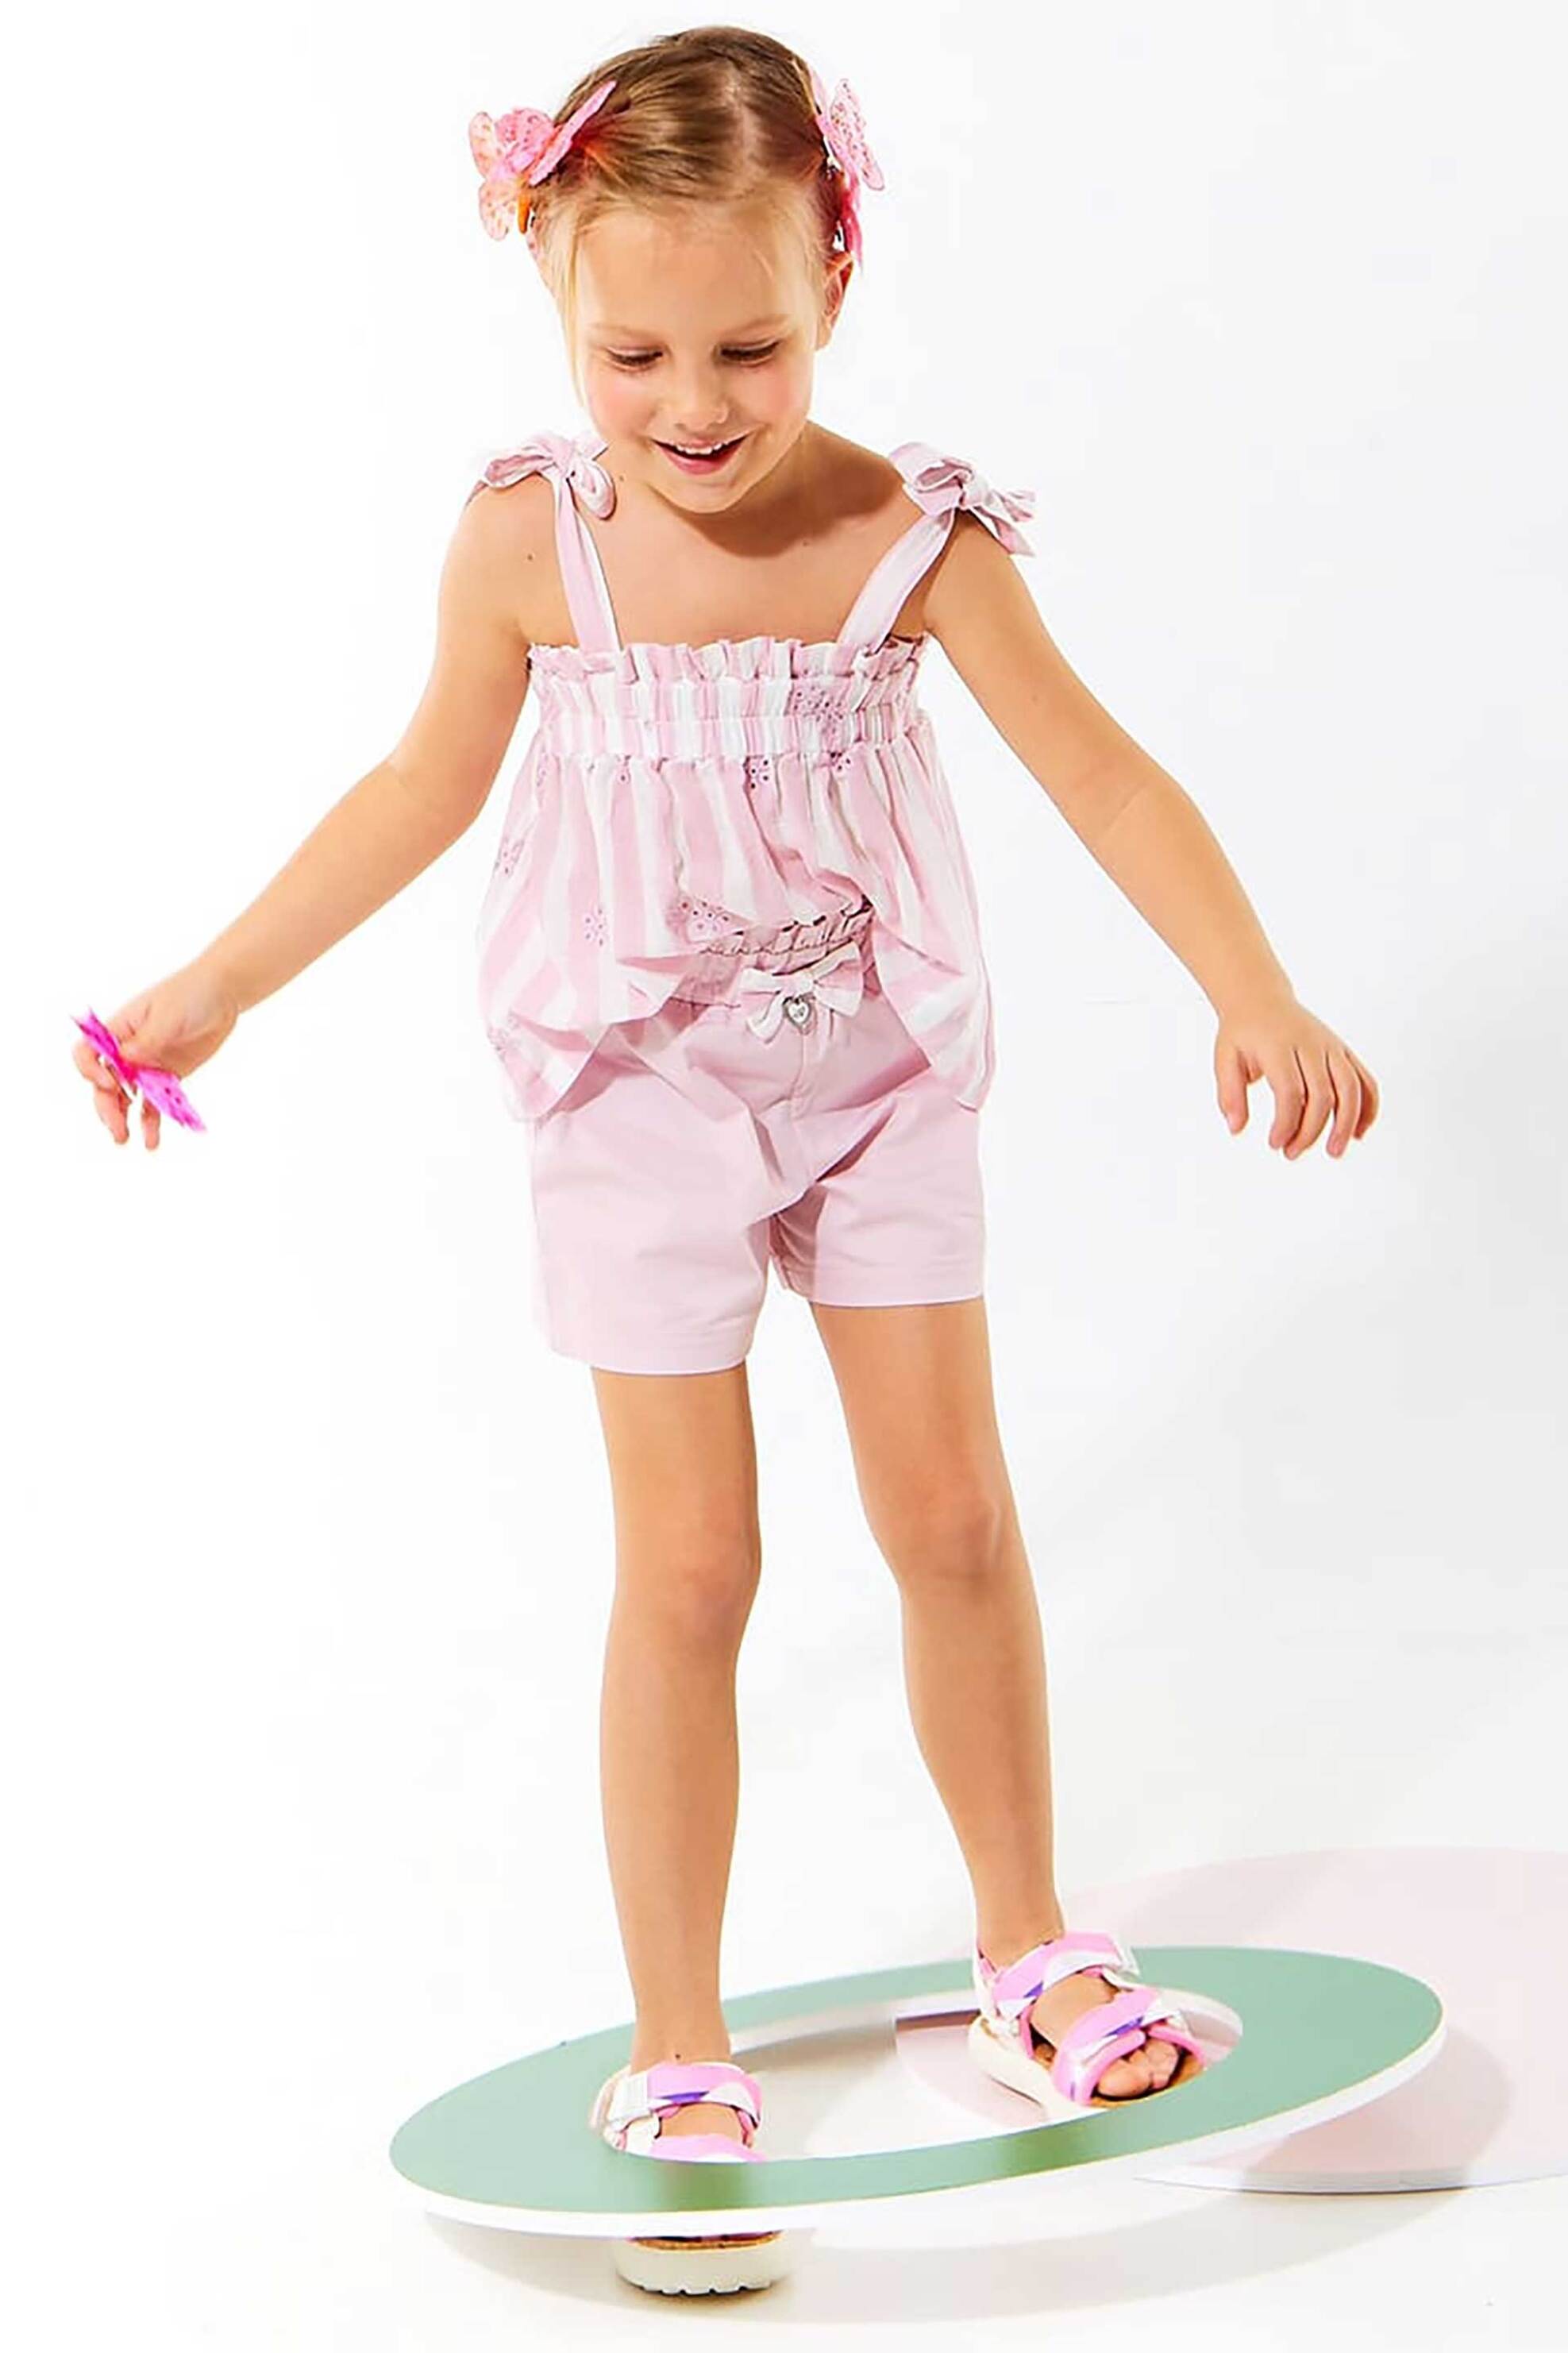 Alouette βρεφικό σετ με κέντημα μπλούζα φούστα και ασορτί κορδέλα - 00270712 Ροζ